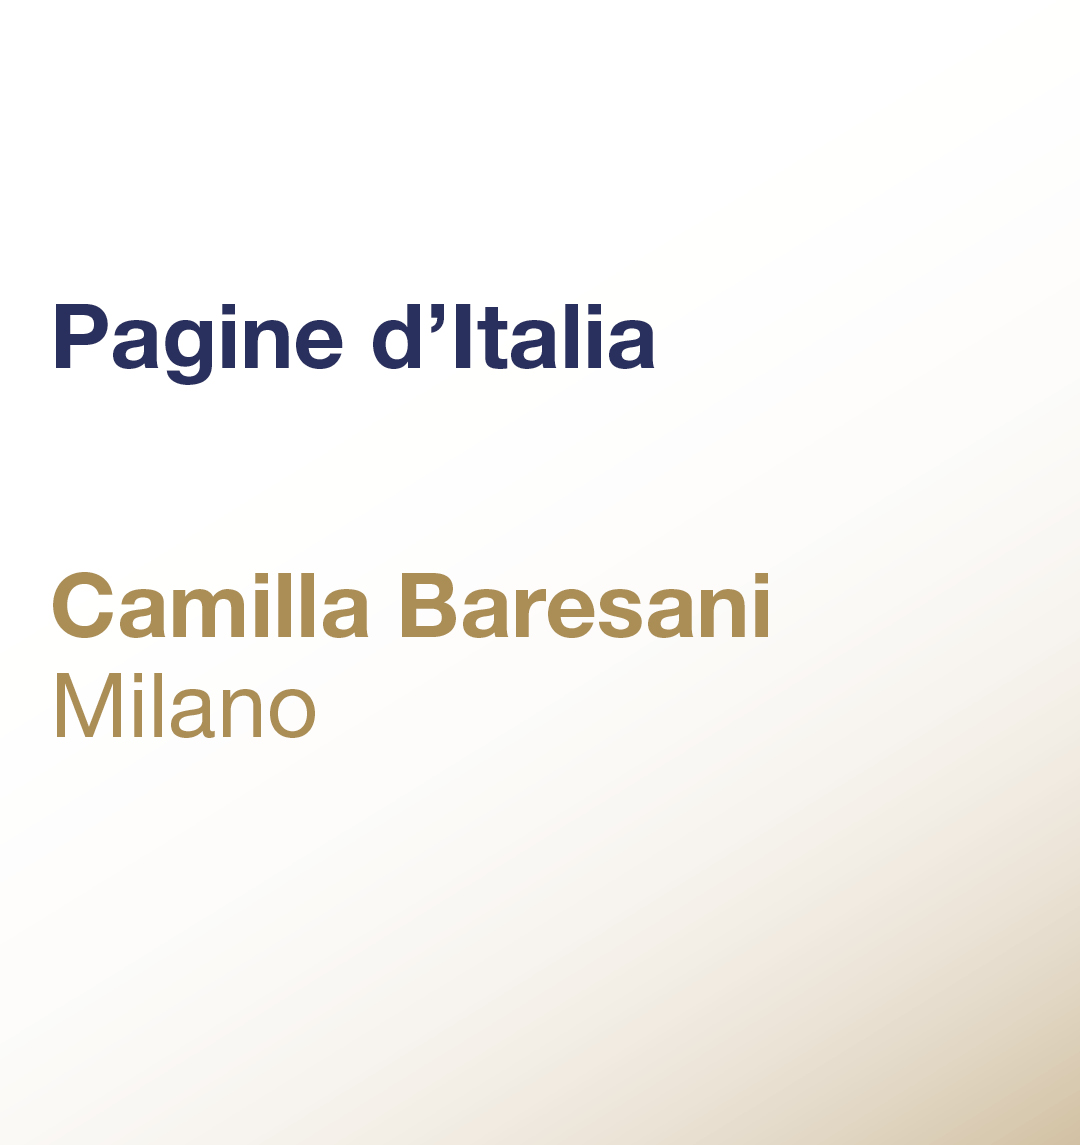 Pagine d’Italia – Camilla Baresani – Milano